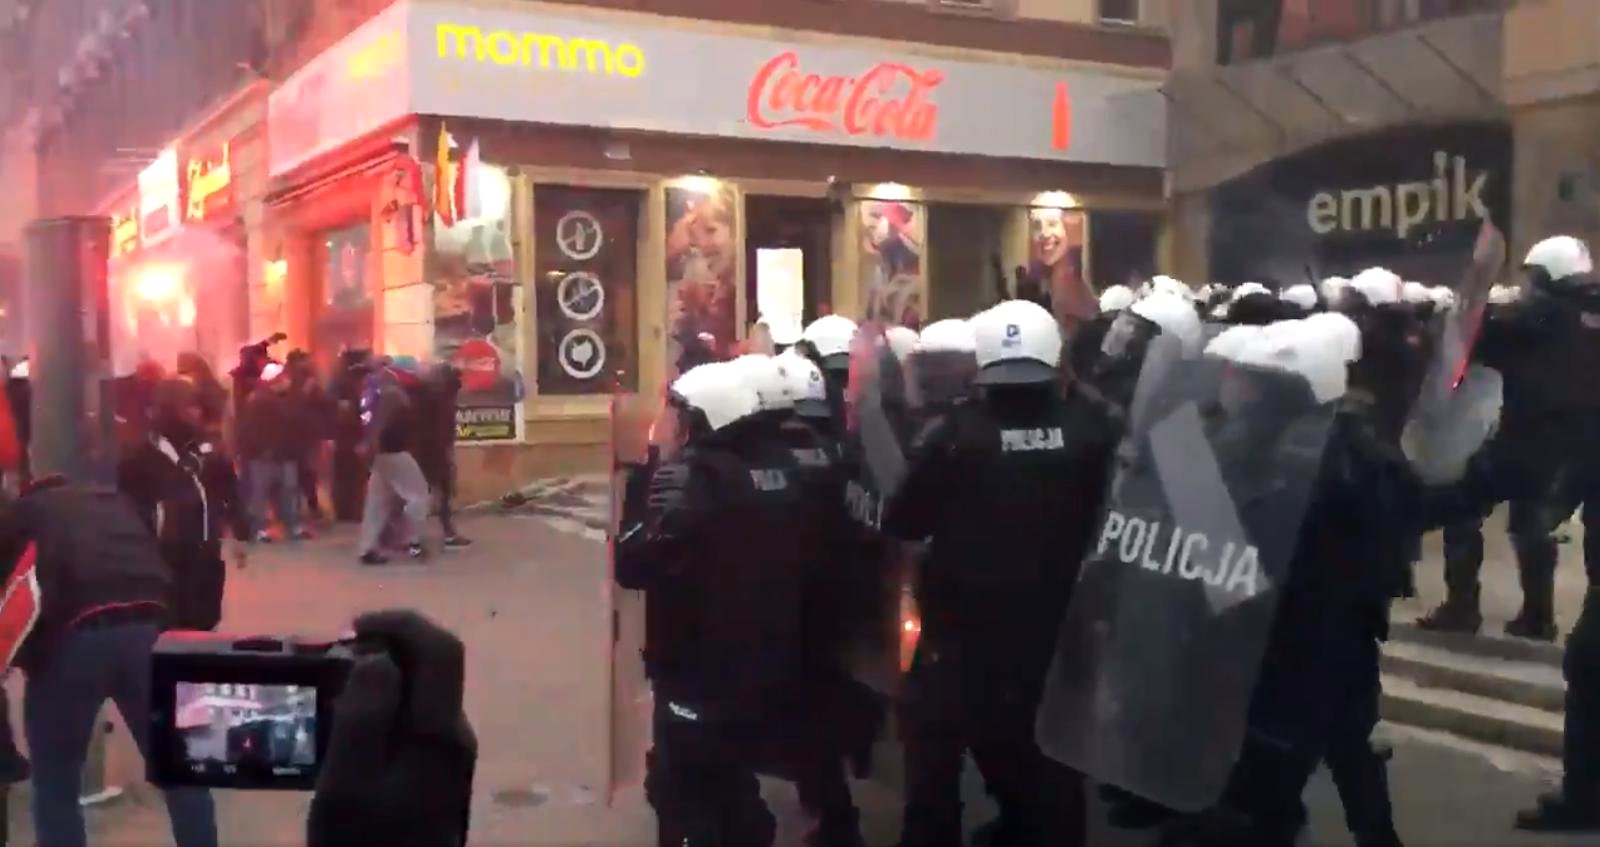 propolski.pl: Podczas Marszi doszło do starć z policją